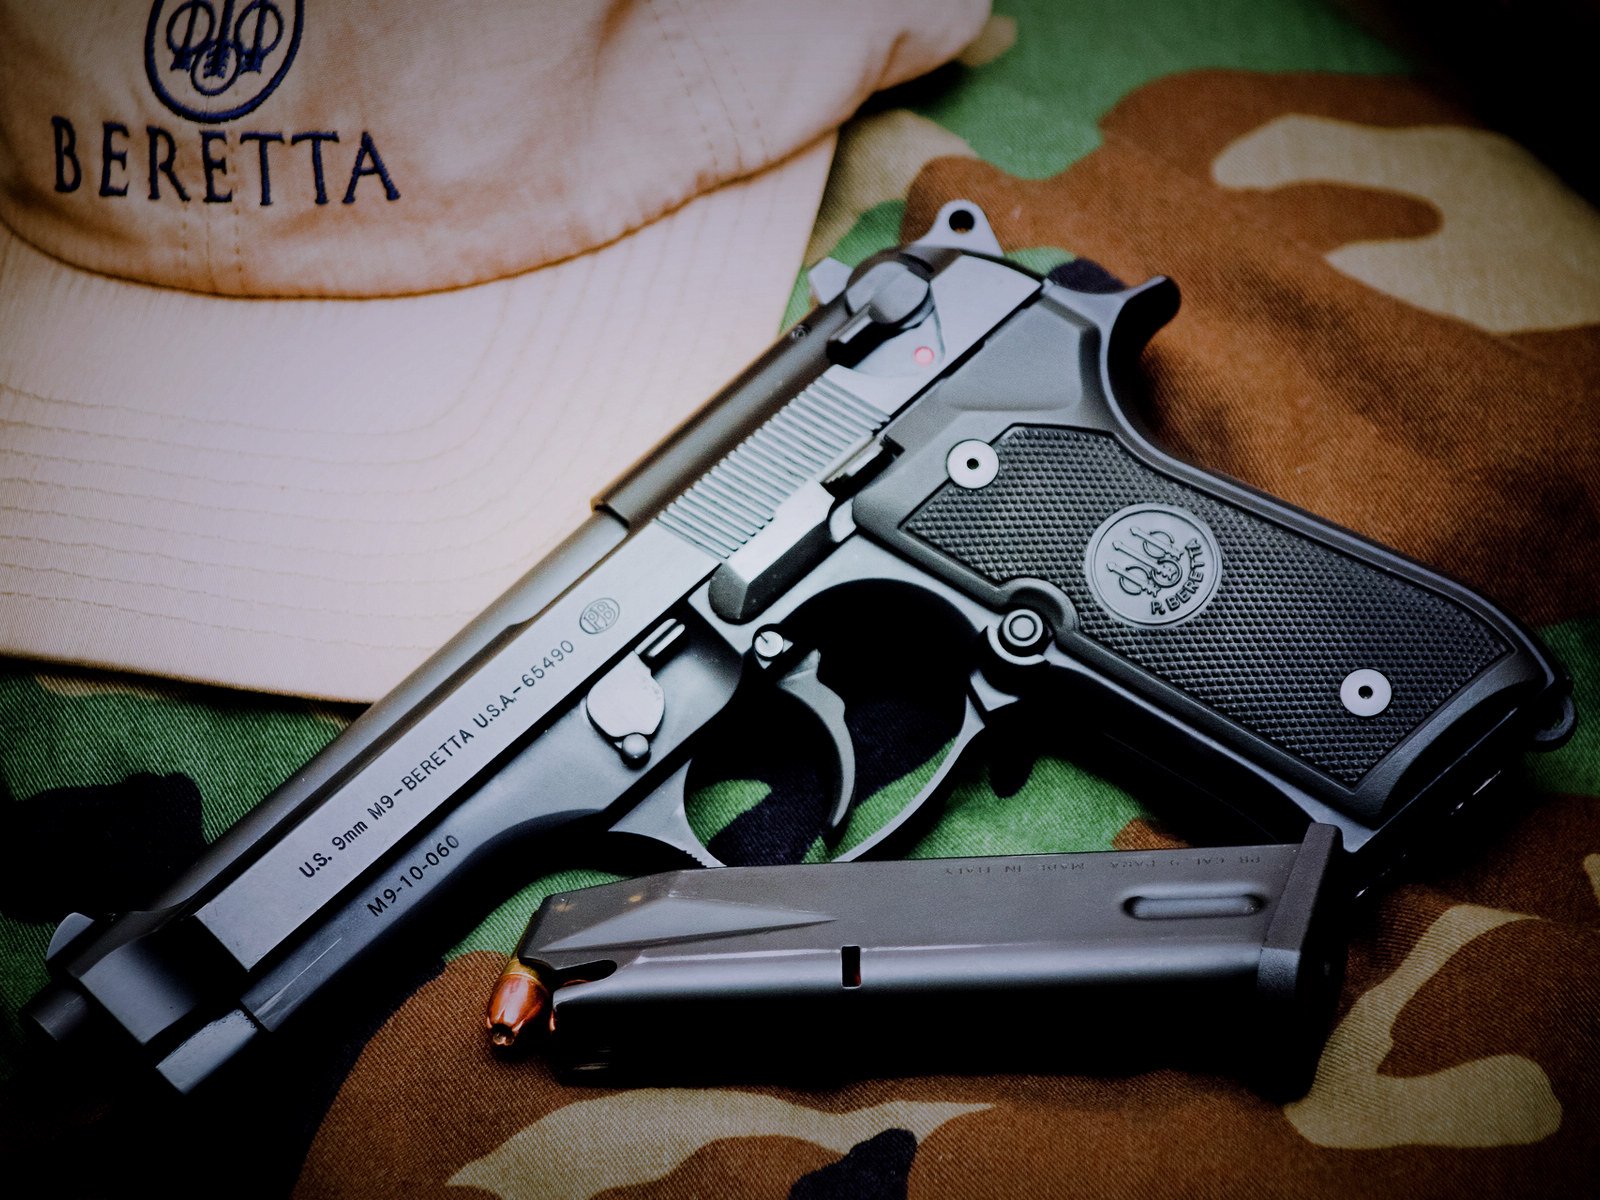 Beretta Wallpaper Beretta m9 pistol widescreen